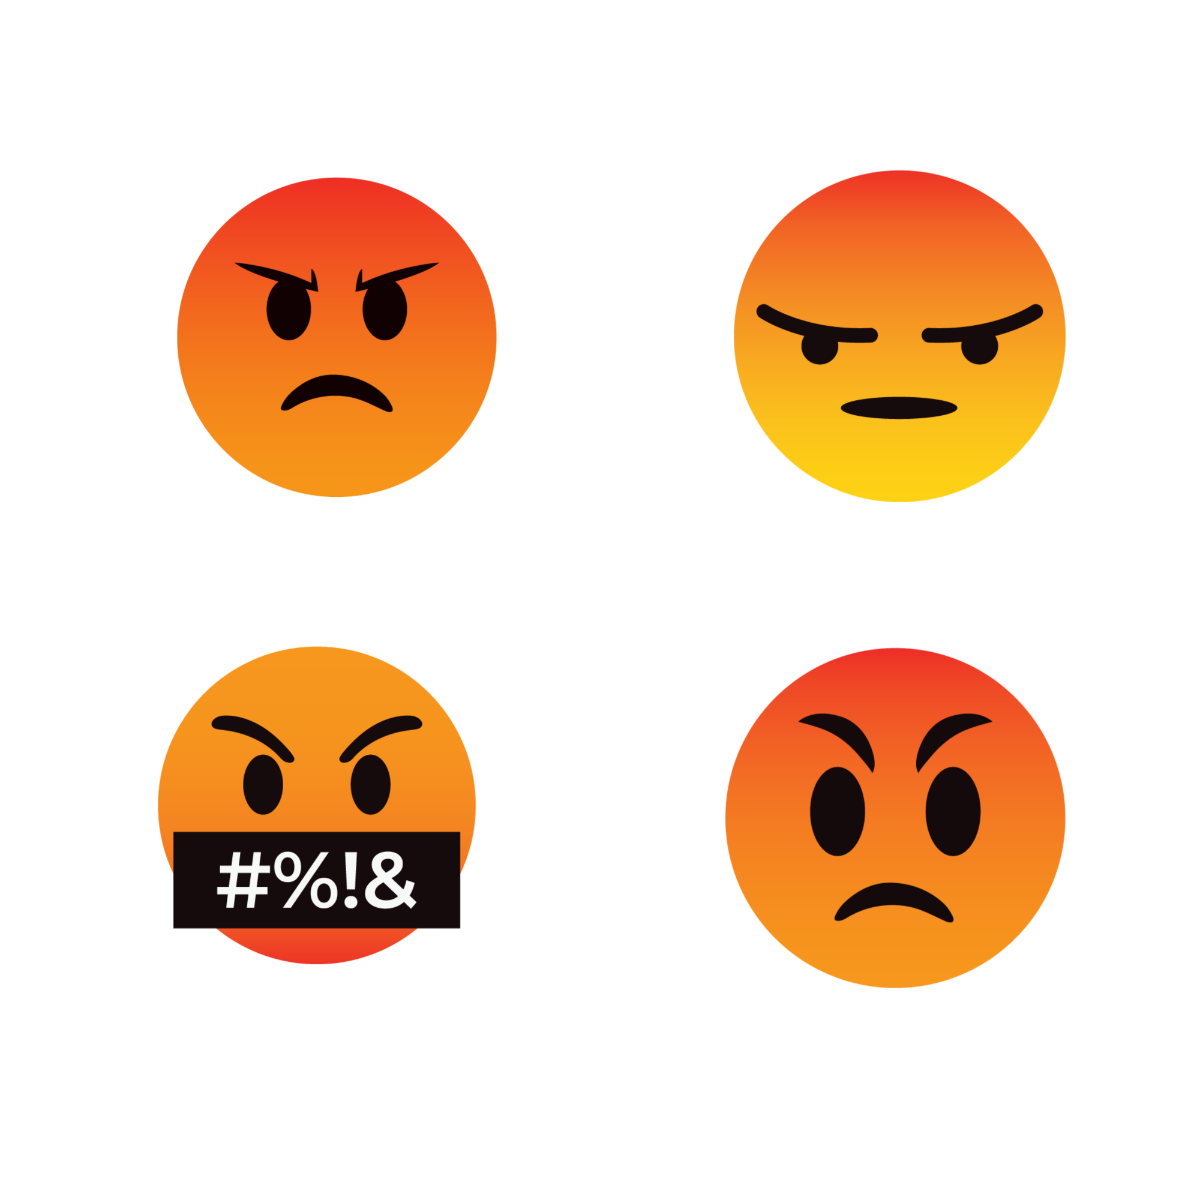 Angry Emoji Vector